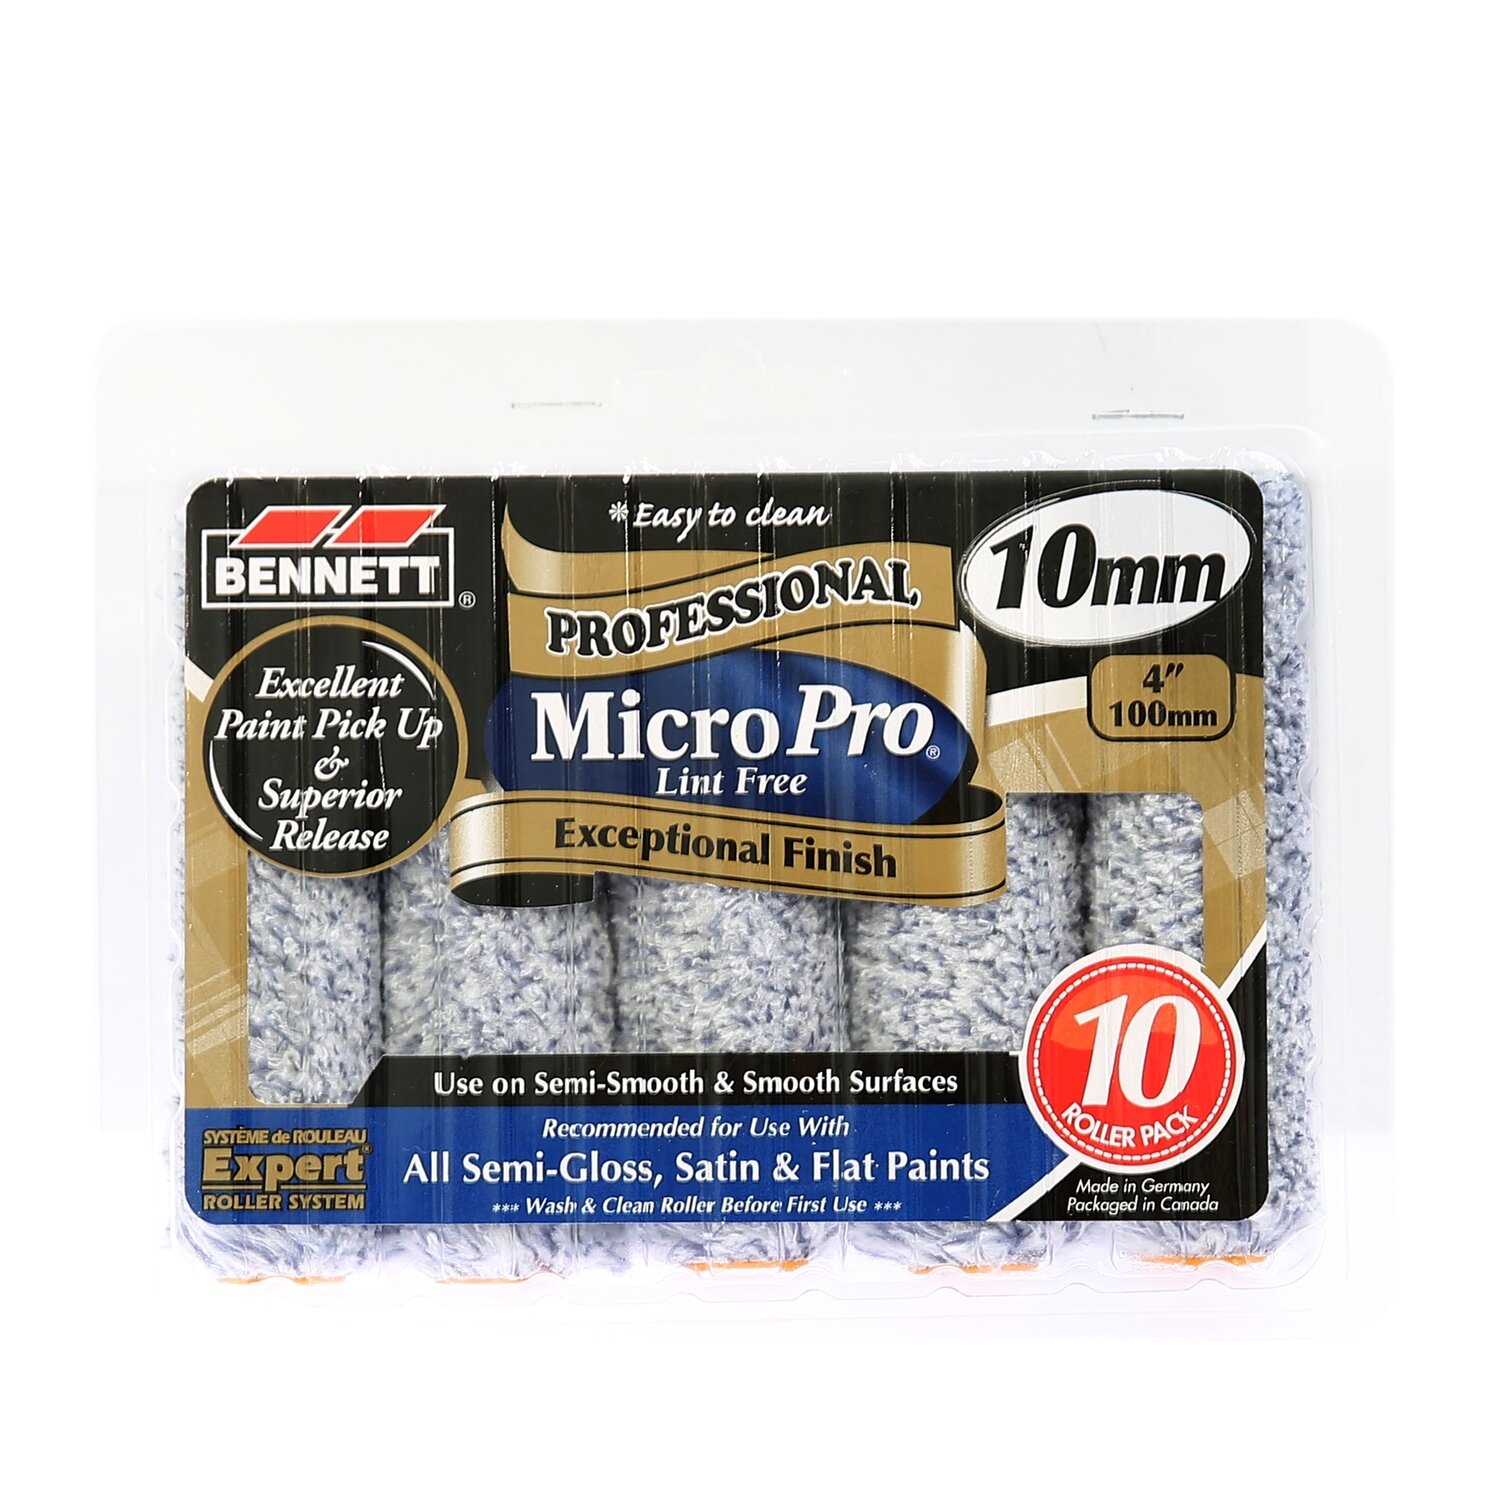 Bennett 4" Micro Pro Miniroller - 10 Pack